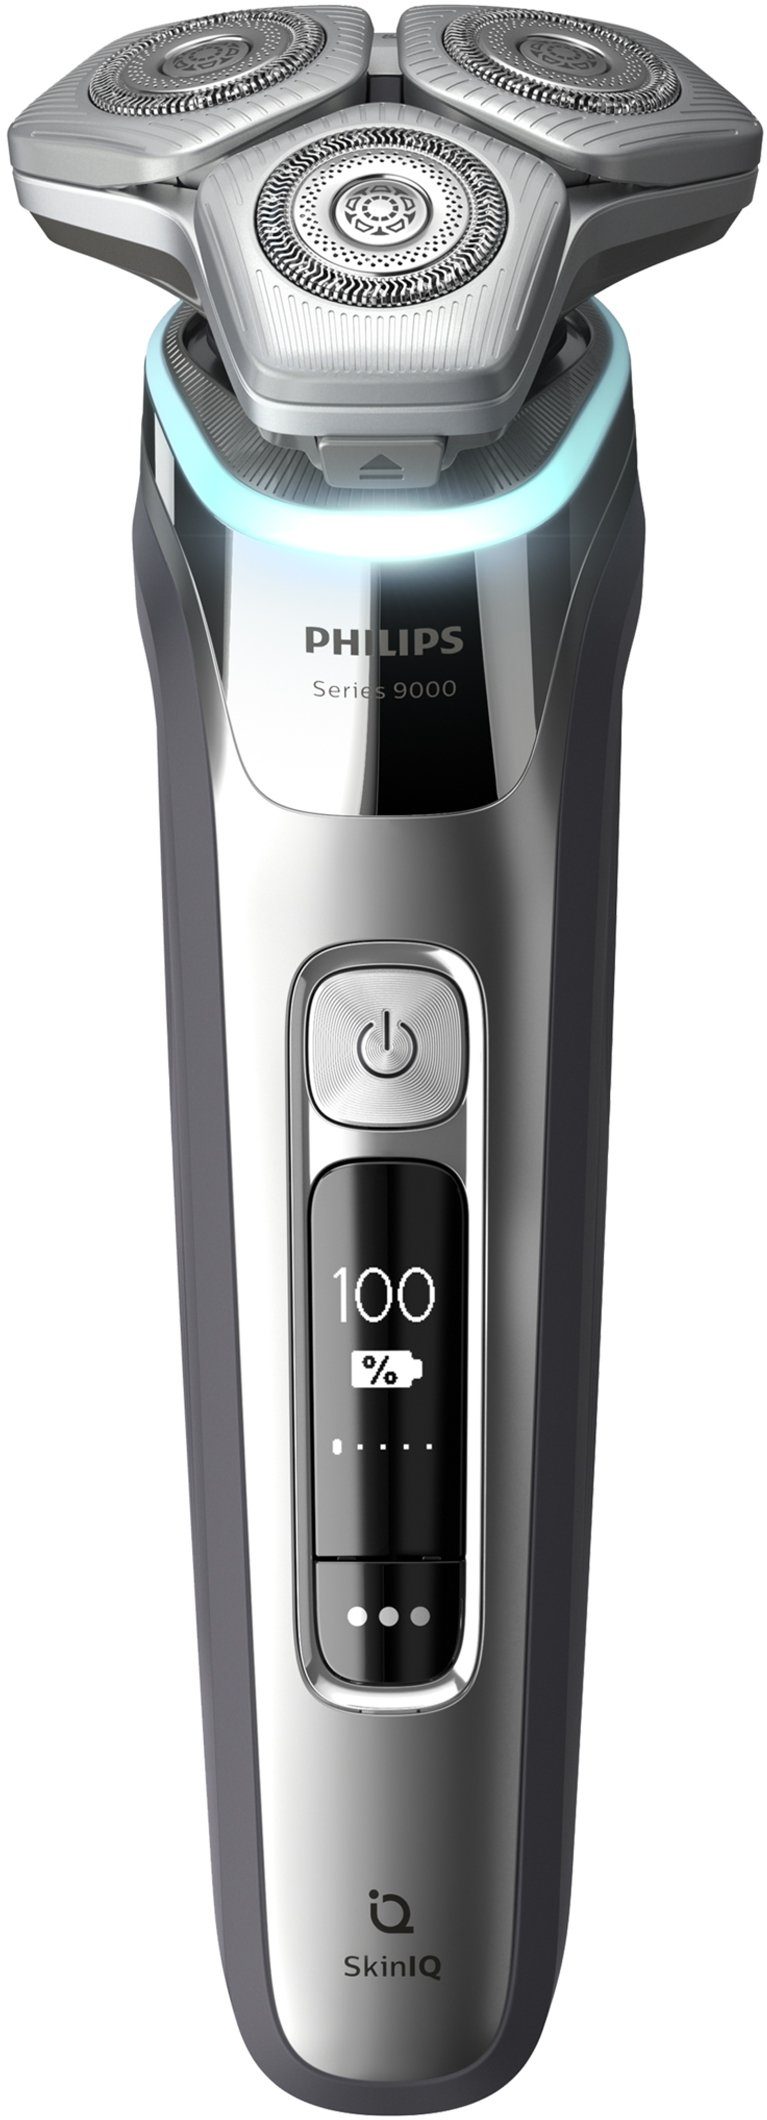 Ladestation Elektrorasierer Philips Shaver 9000 IQ Technologie, series Etui mit S9985/35, inkl. und Skin